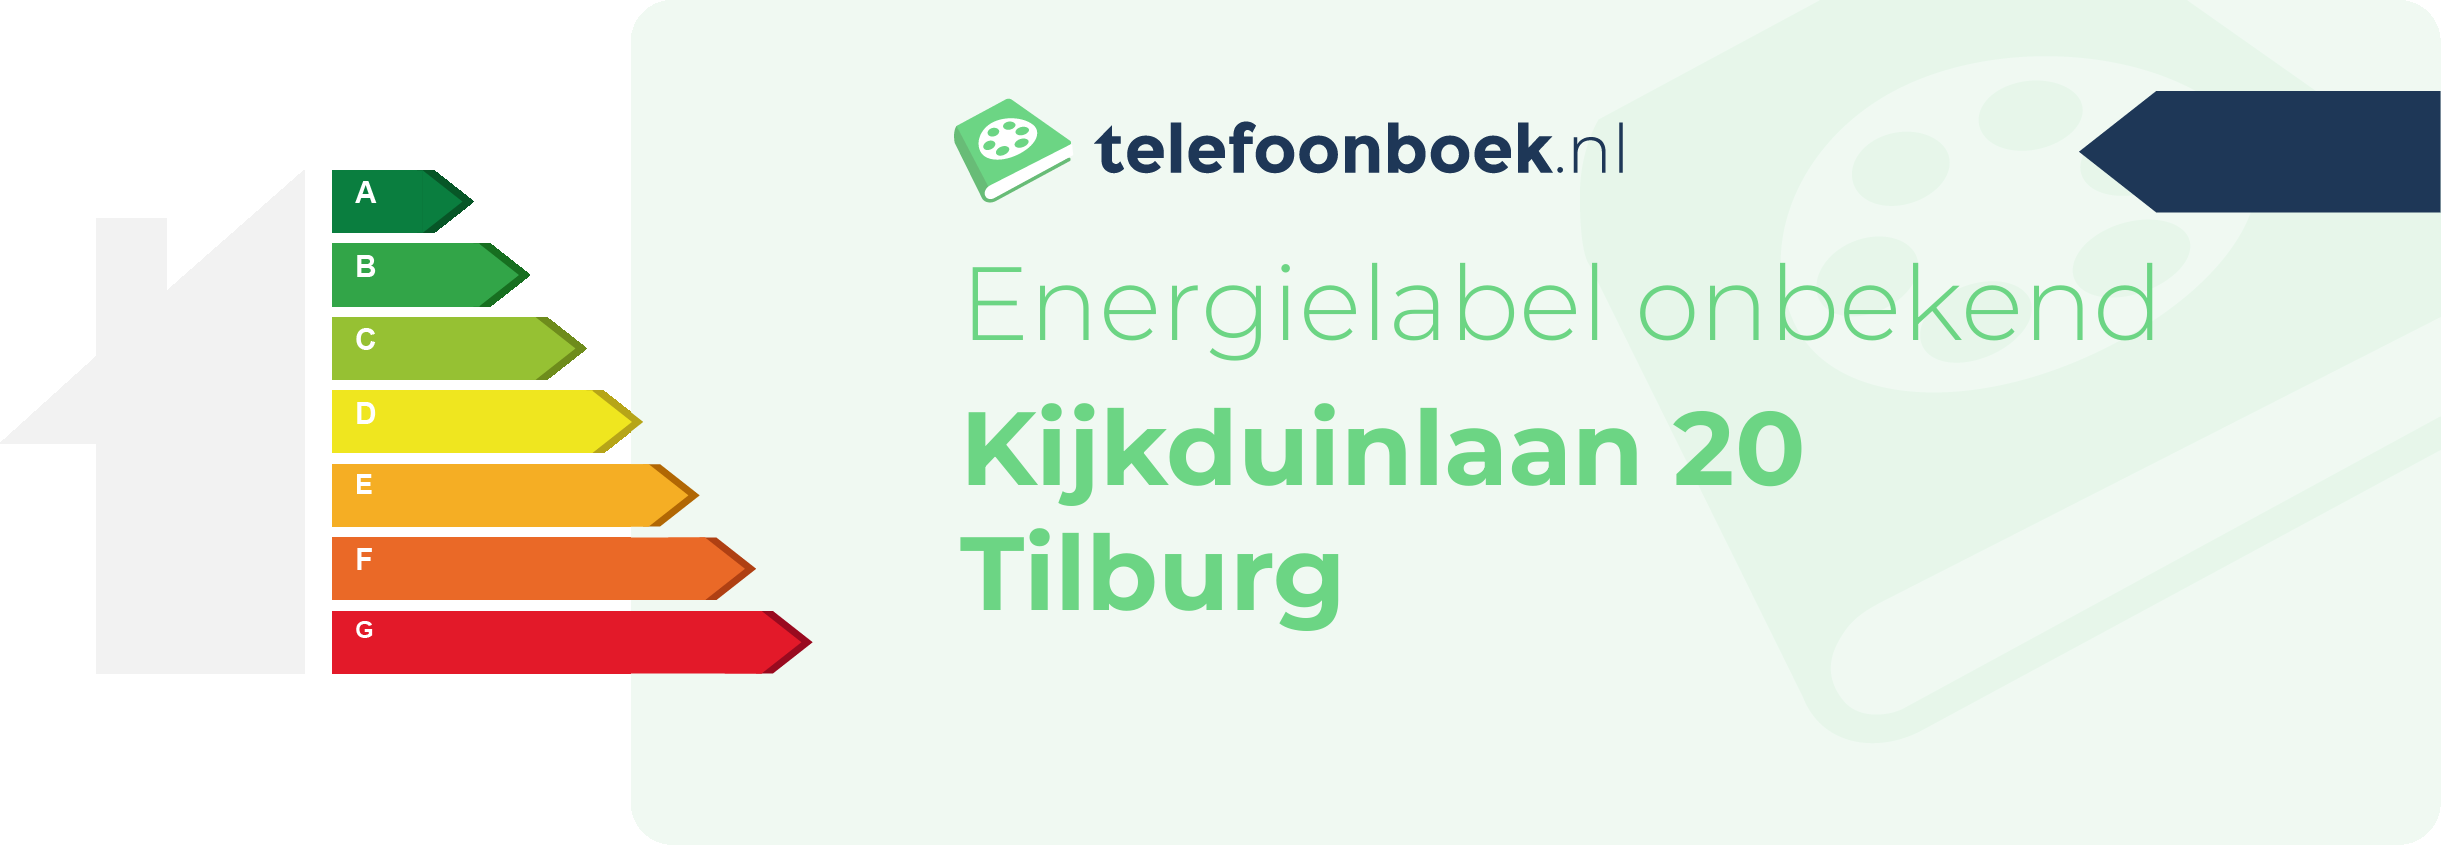 Energielabel Kijkduinlaan 20 Tilburg